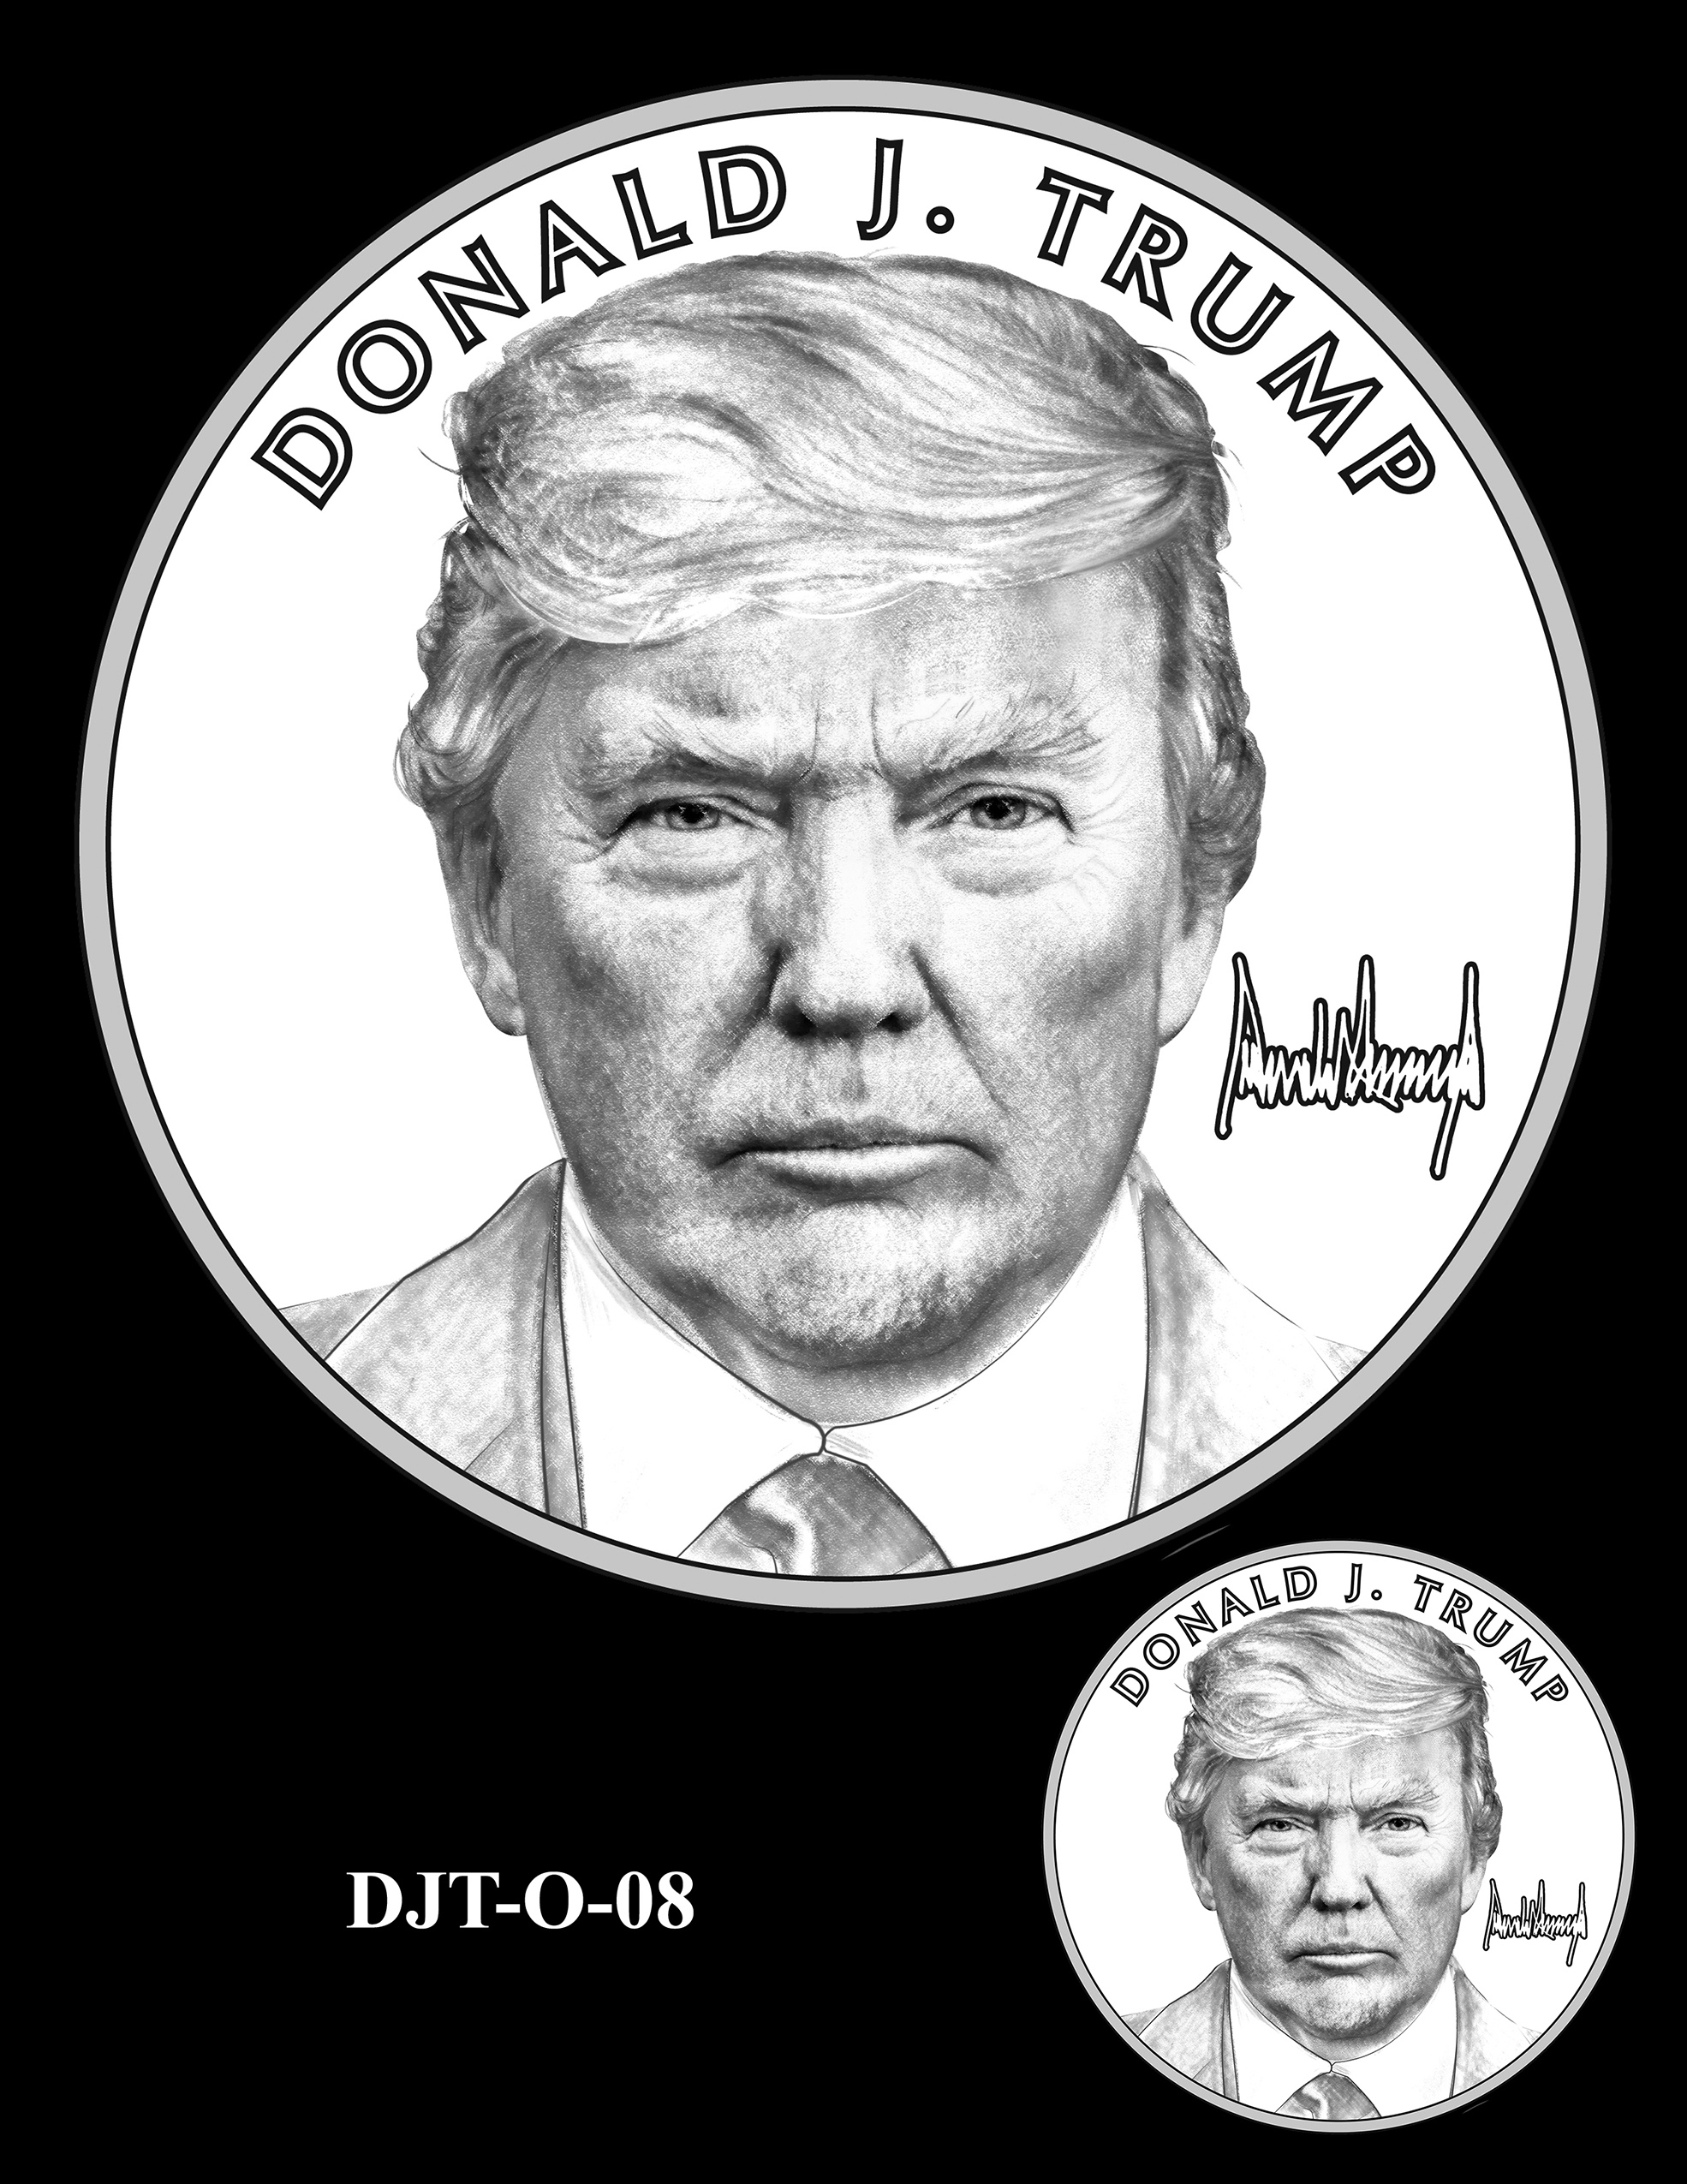 DJT-O-08 -- Donald J. Trump Presidential Medal